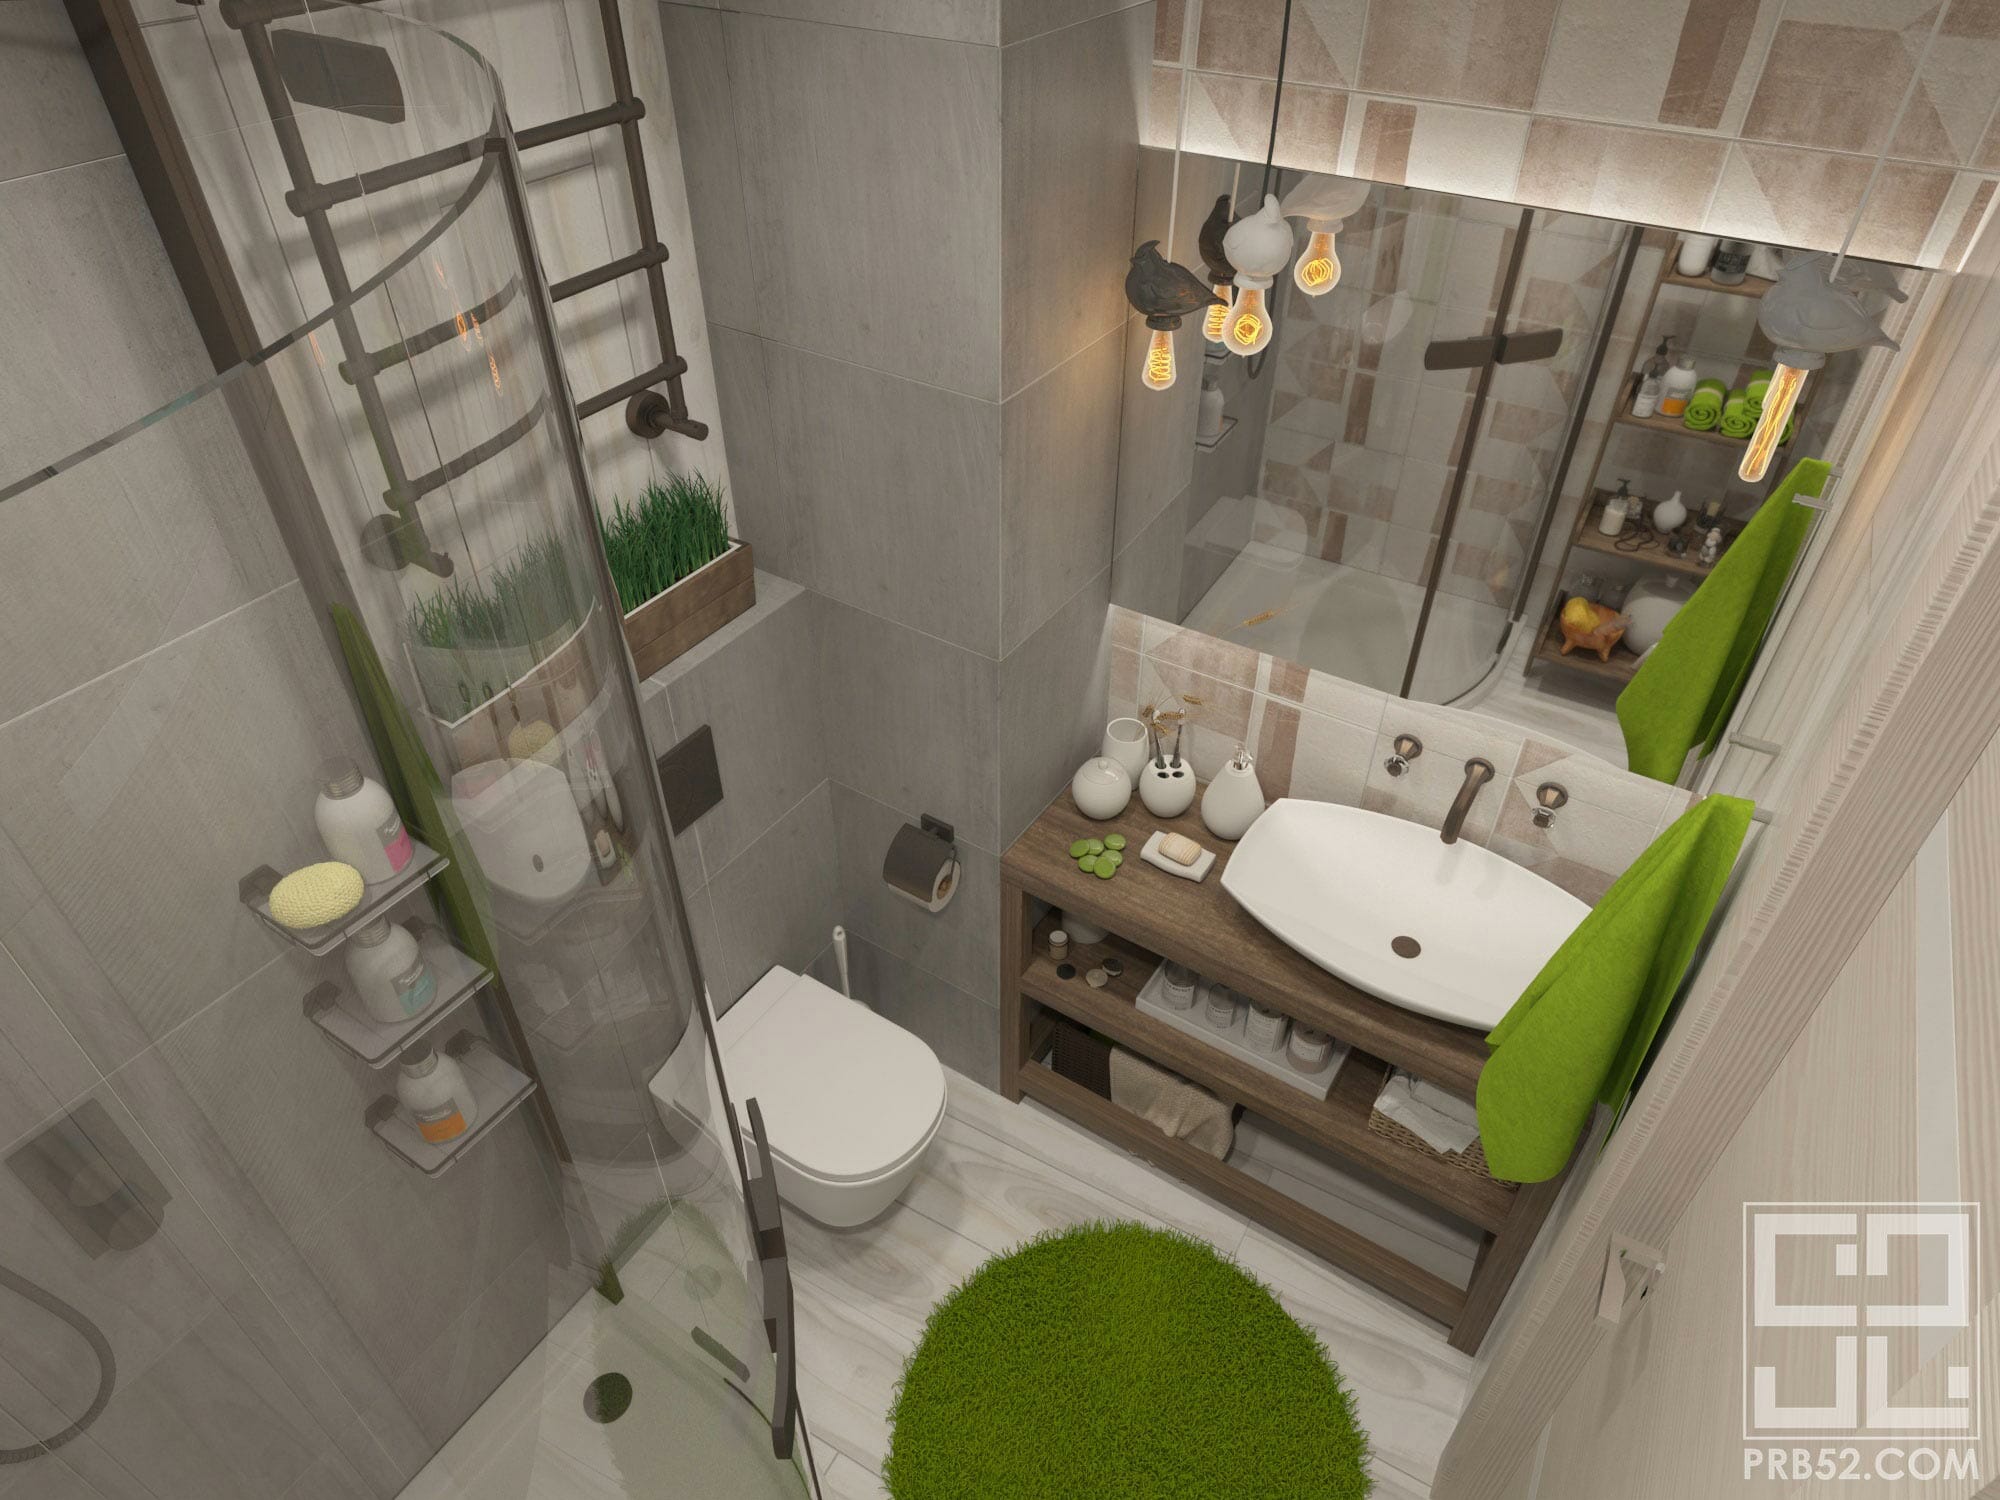 дизайн интерьера ванной комнаты в стиле лофт